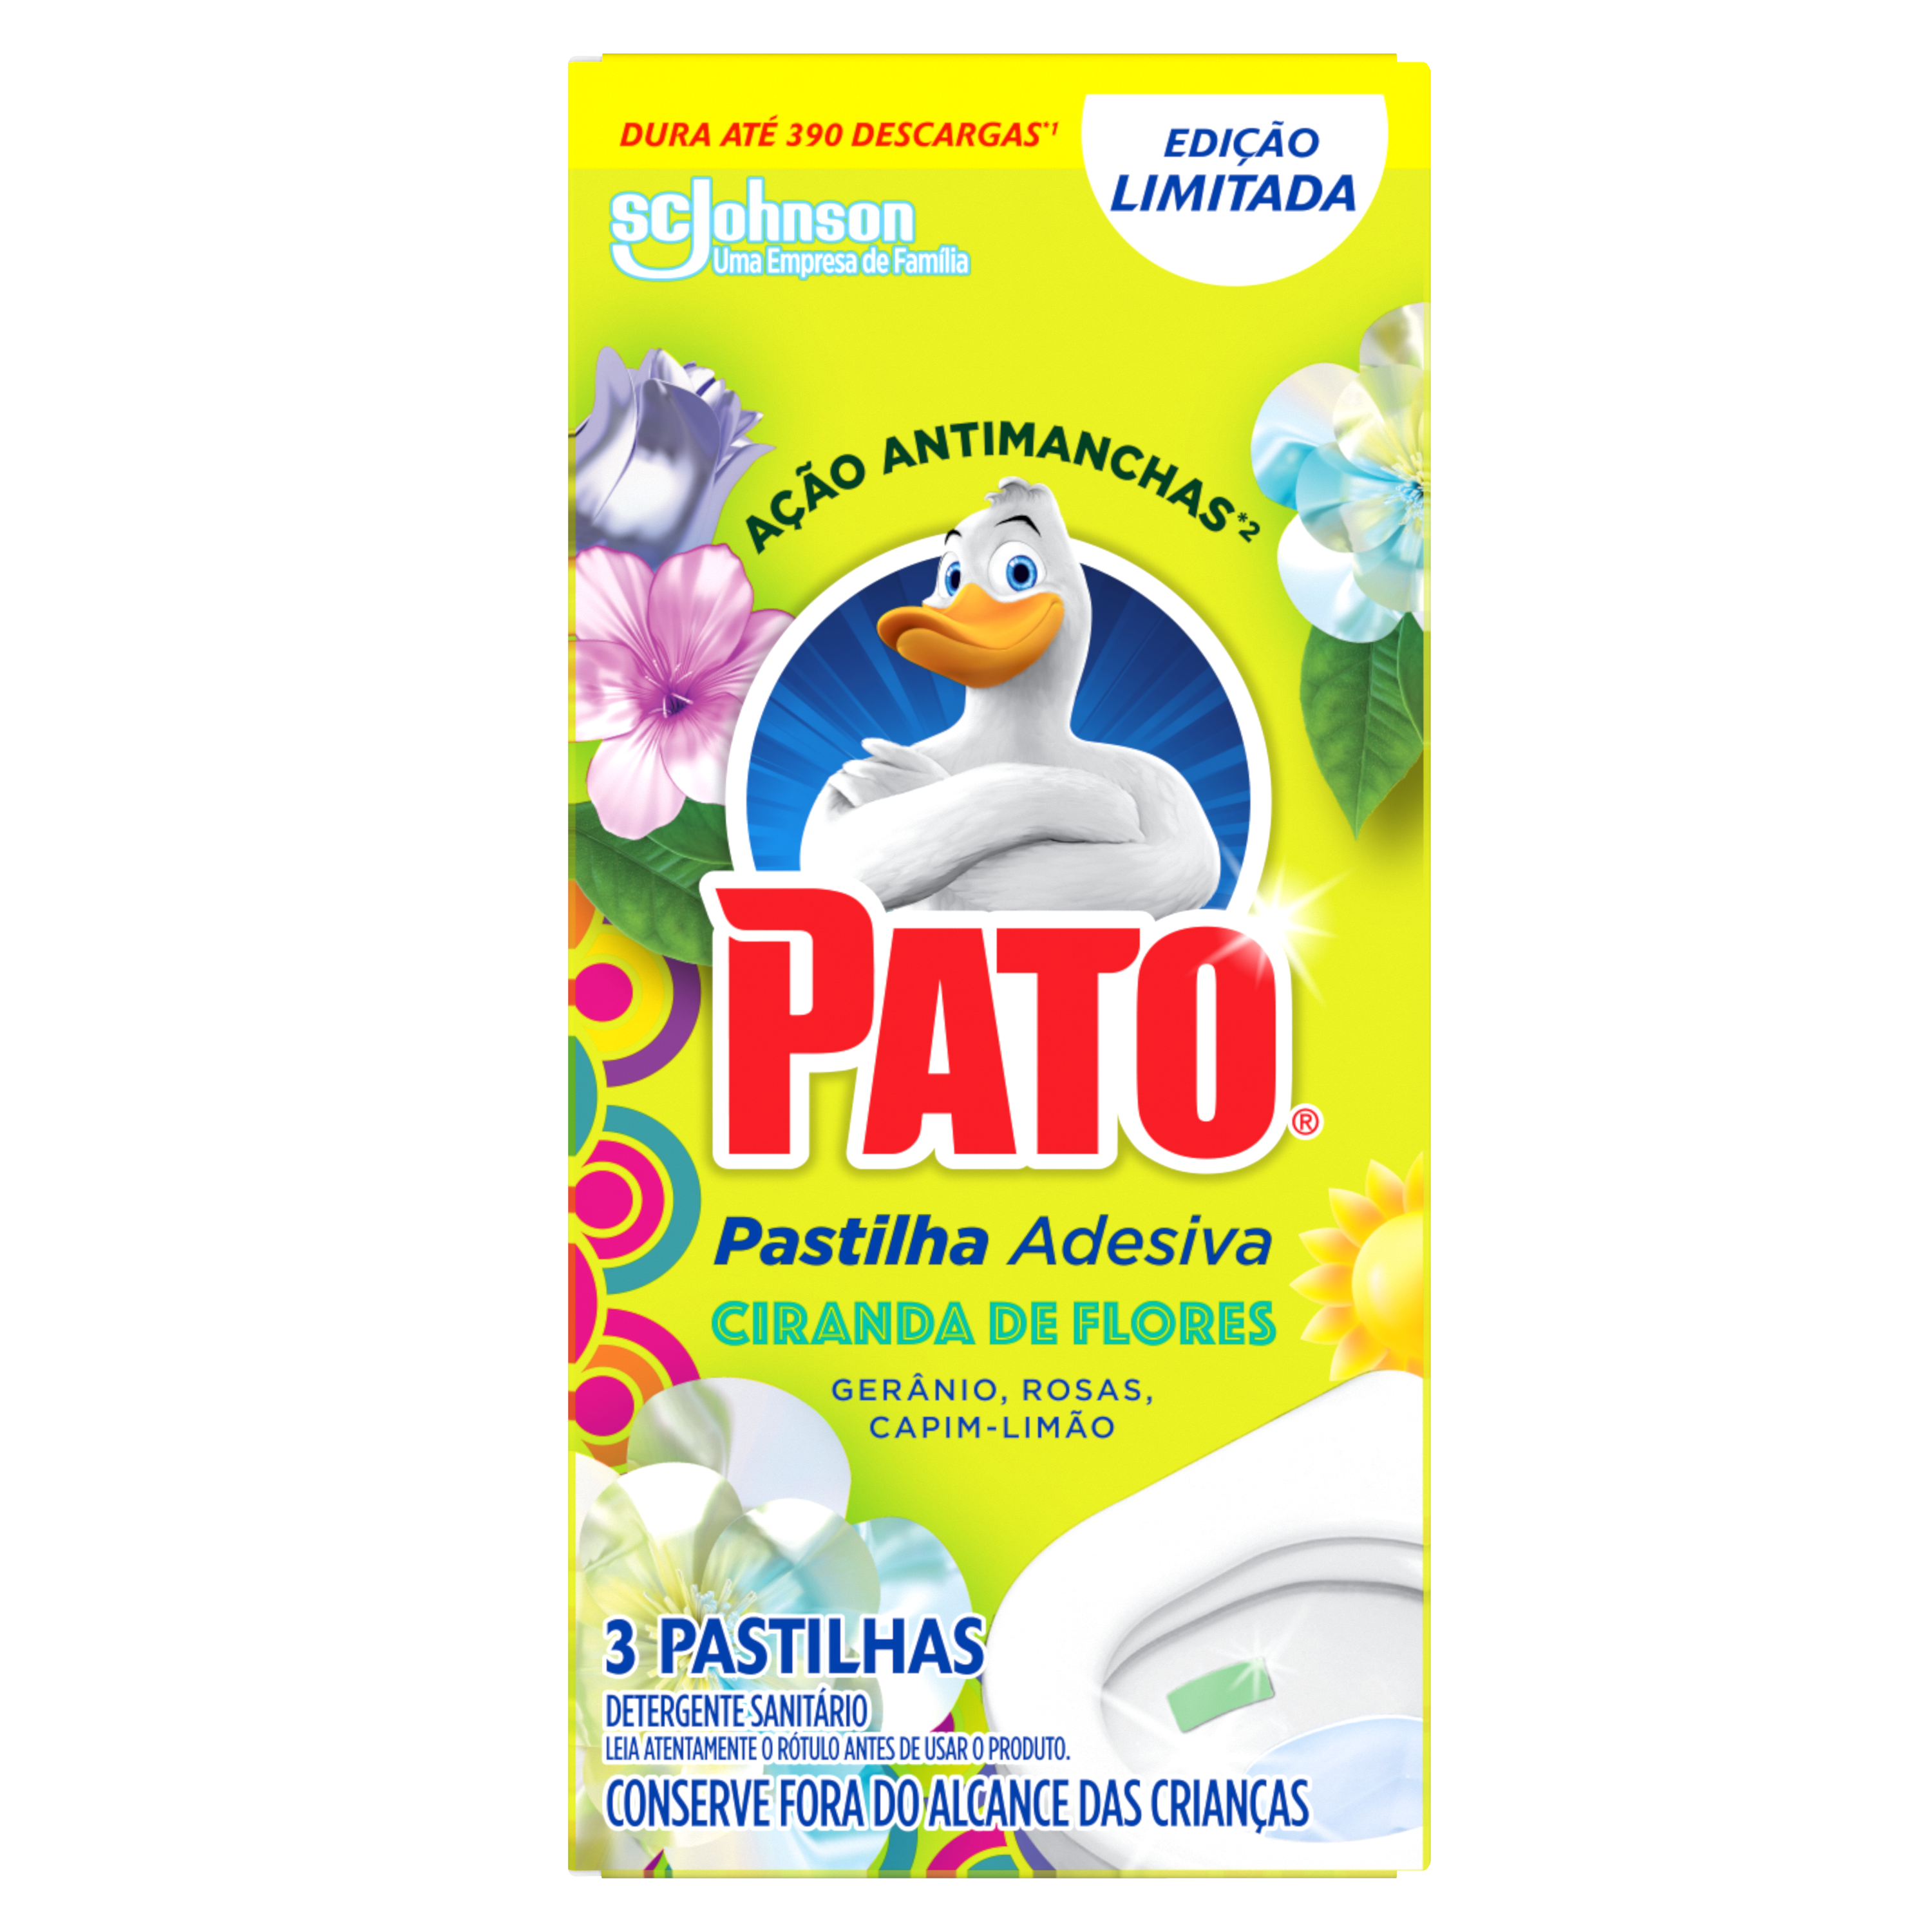 Pato® Pastilha Adesiva Ciranda